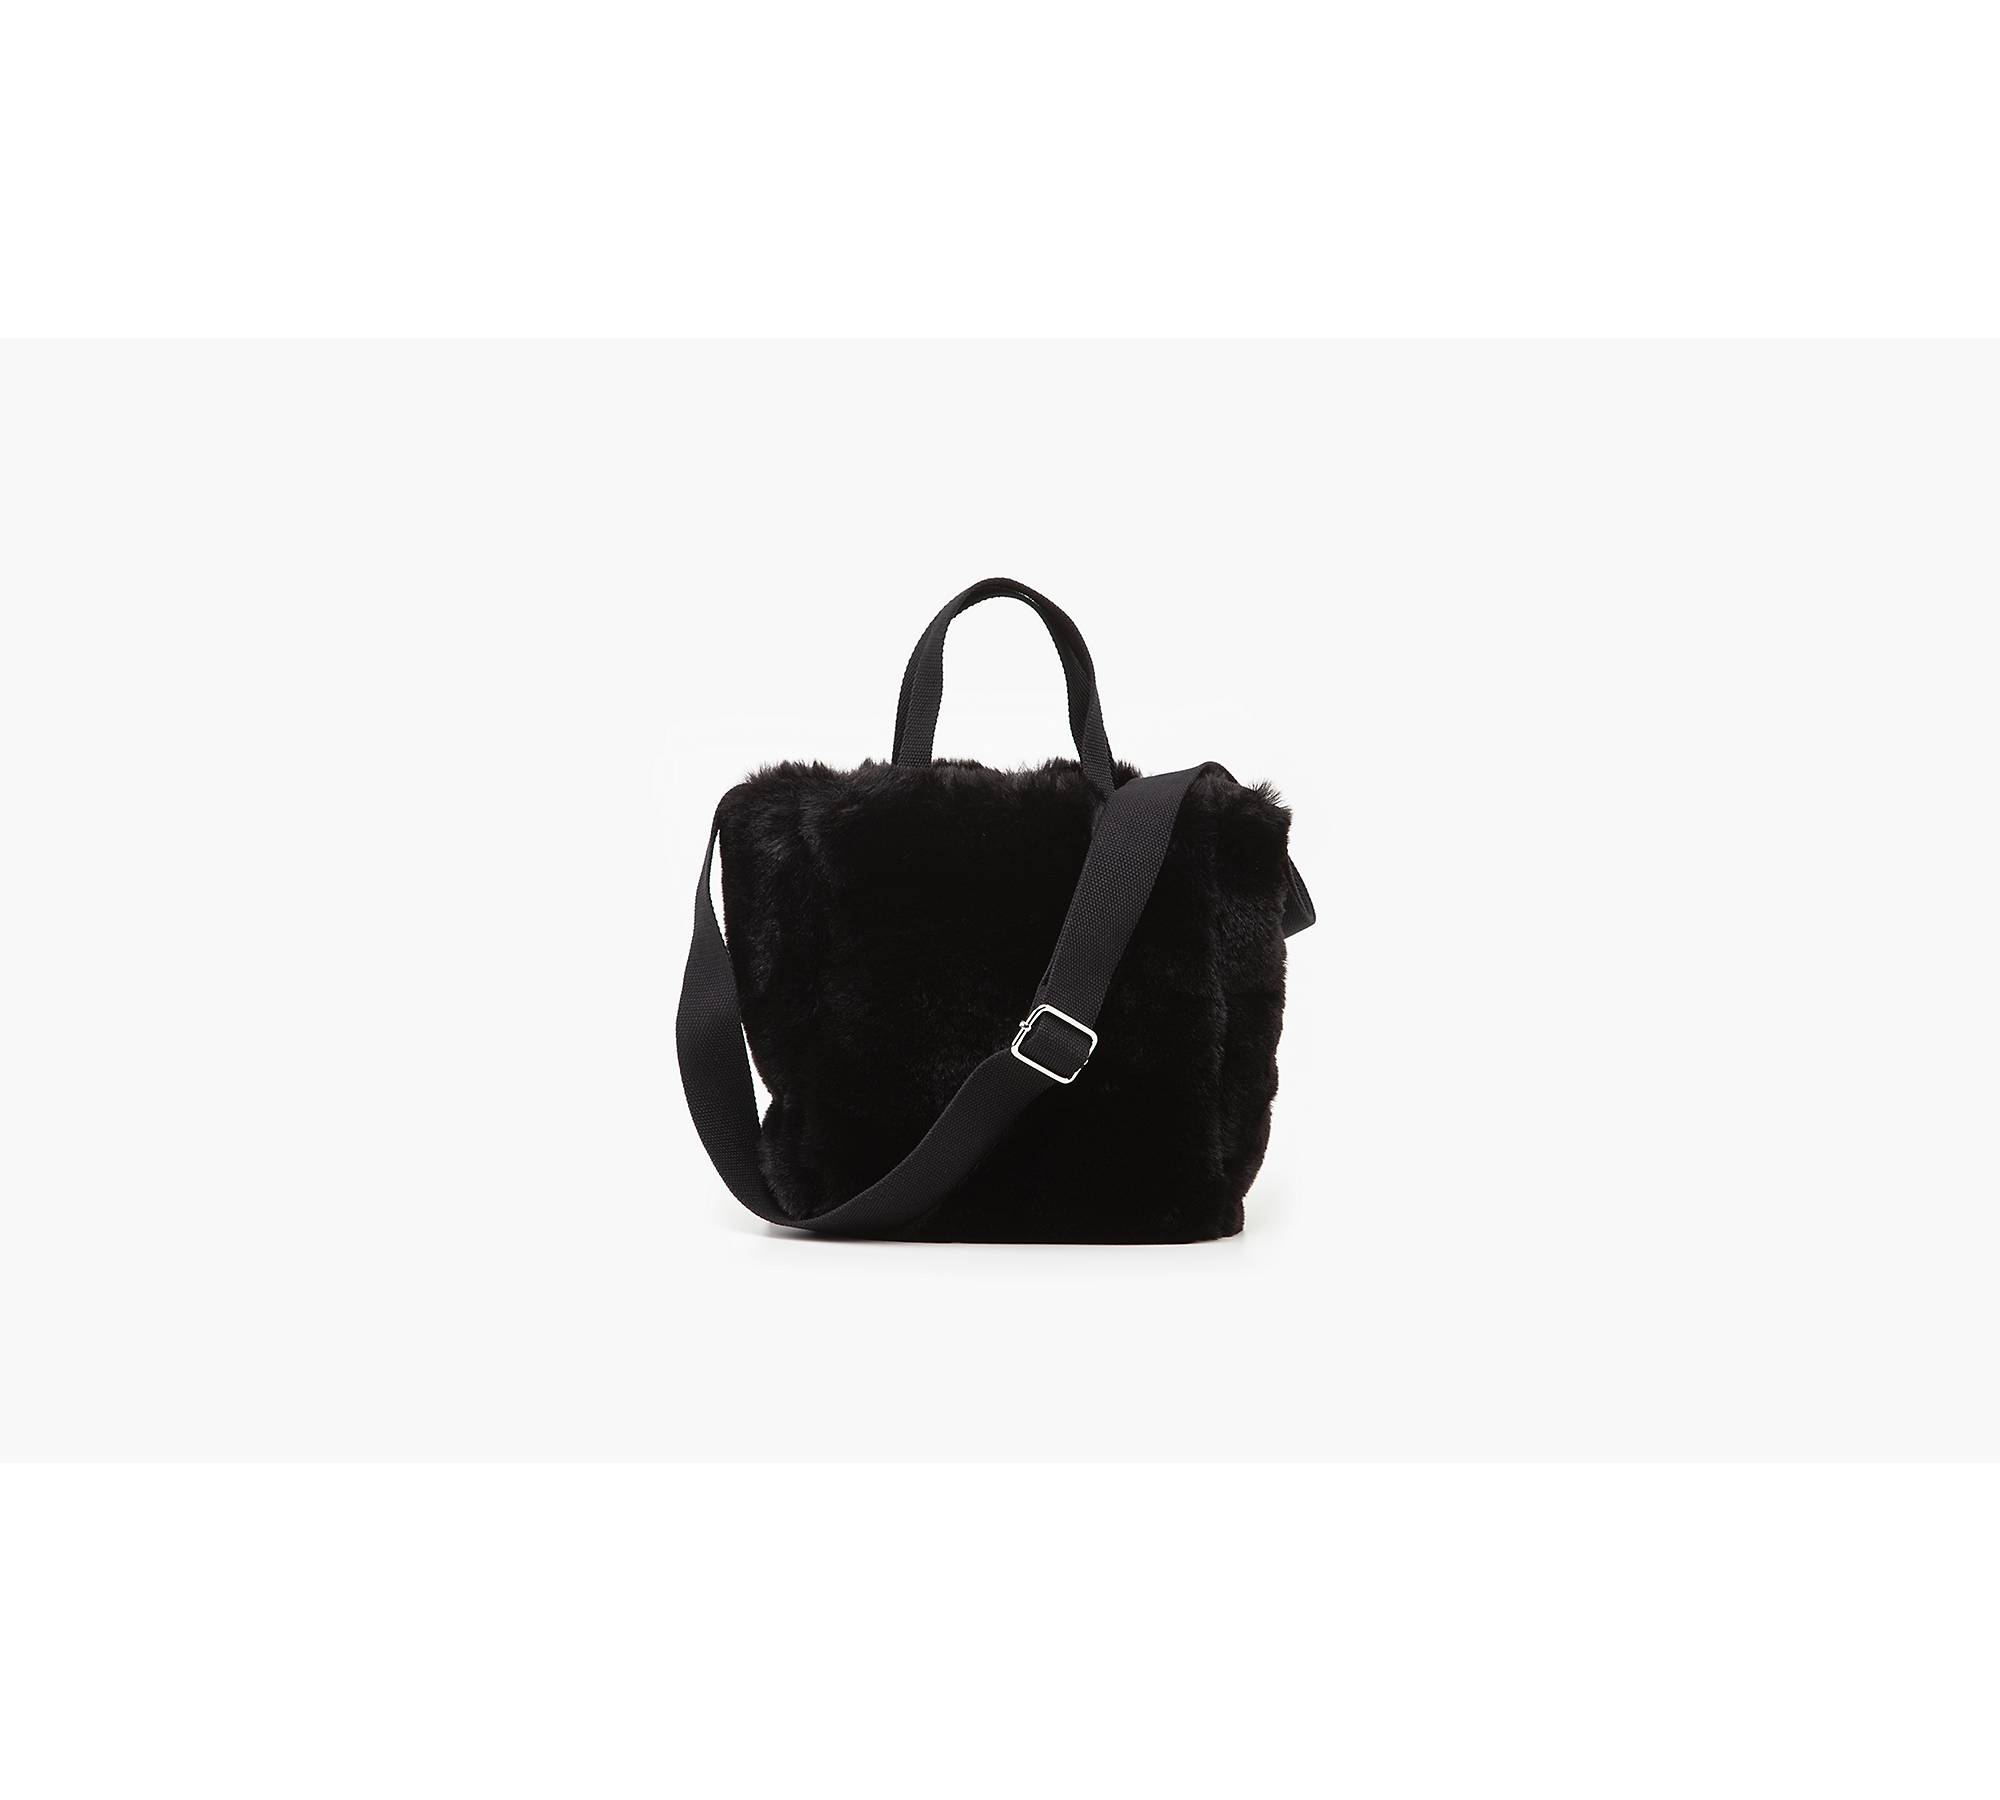 Levi's Women's Mini Handbag